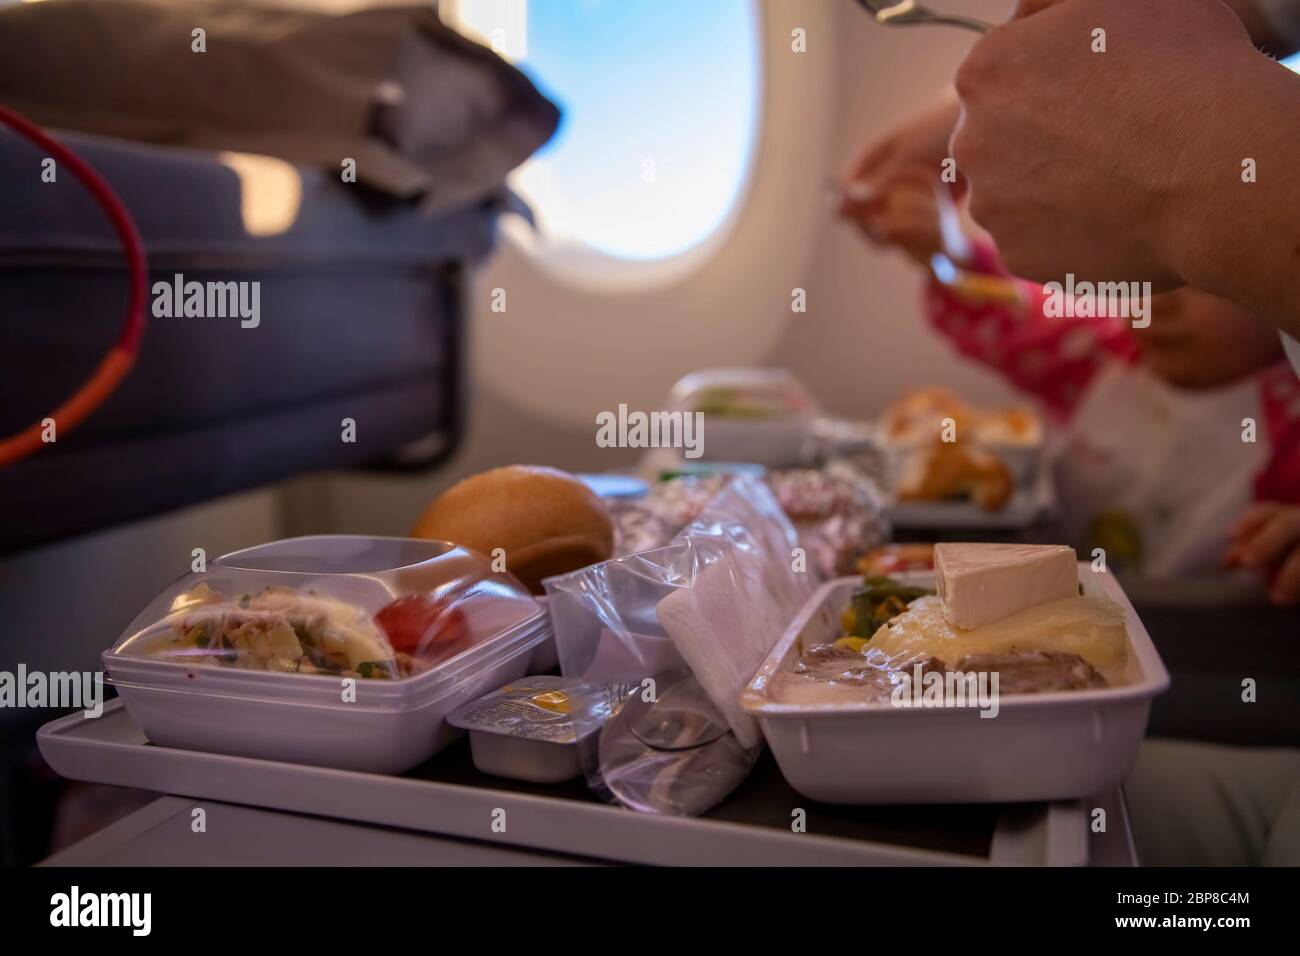 Nahaufnahme Passagierflugzeug isst leckere warme Mahlzeit an Bord auf einem Klapptisch. Im Hintergrund ist ein Fenster im Bullauge. Stockfoto